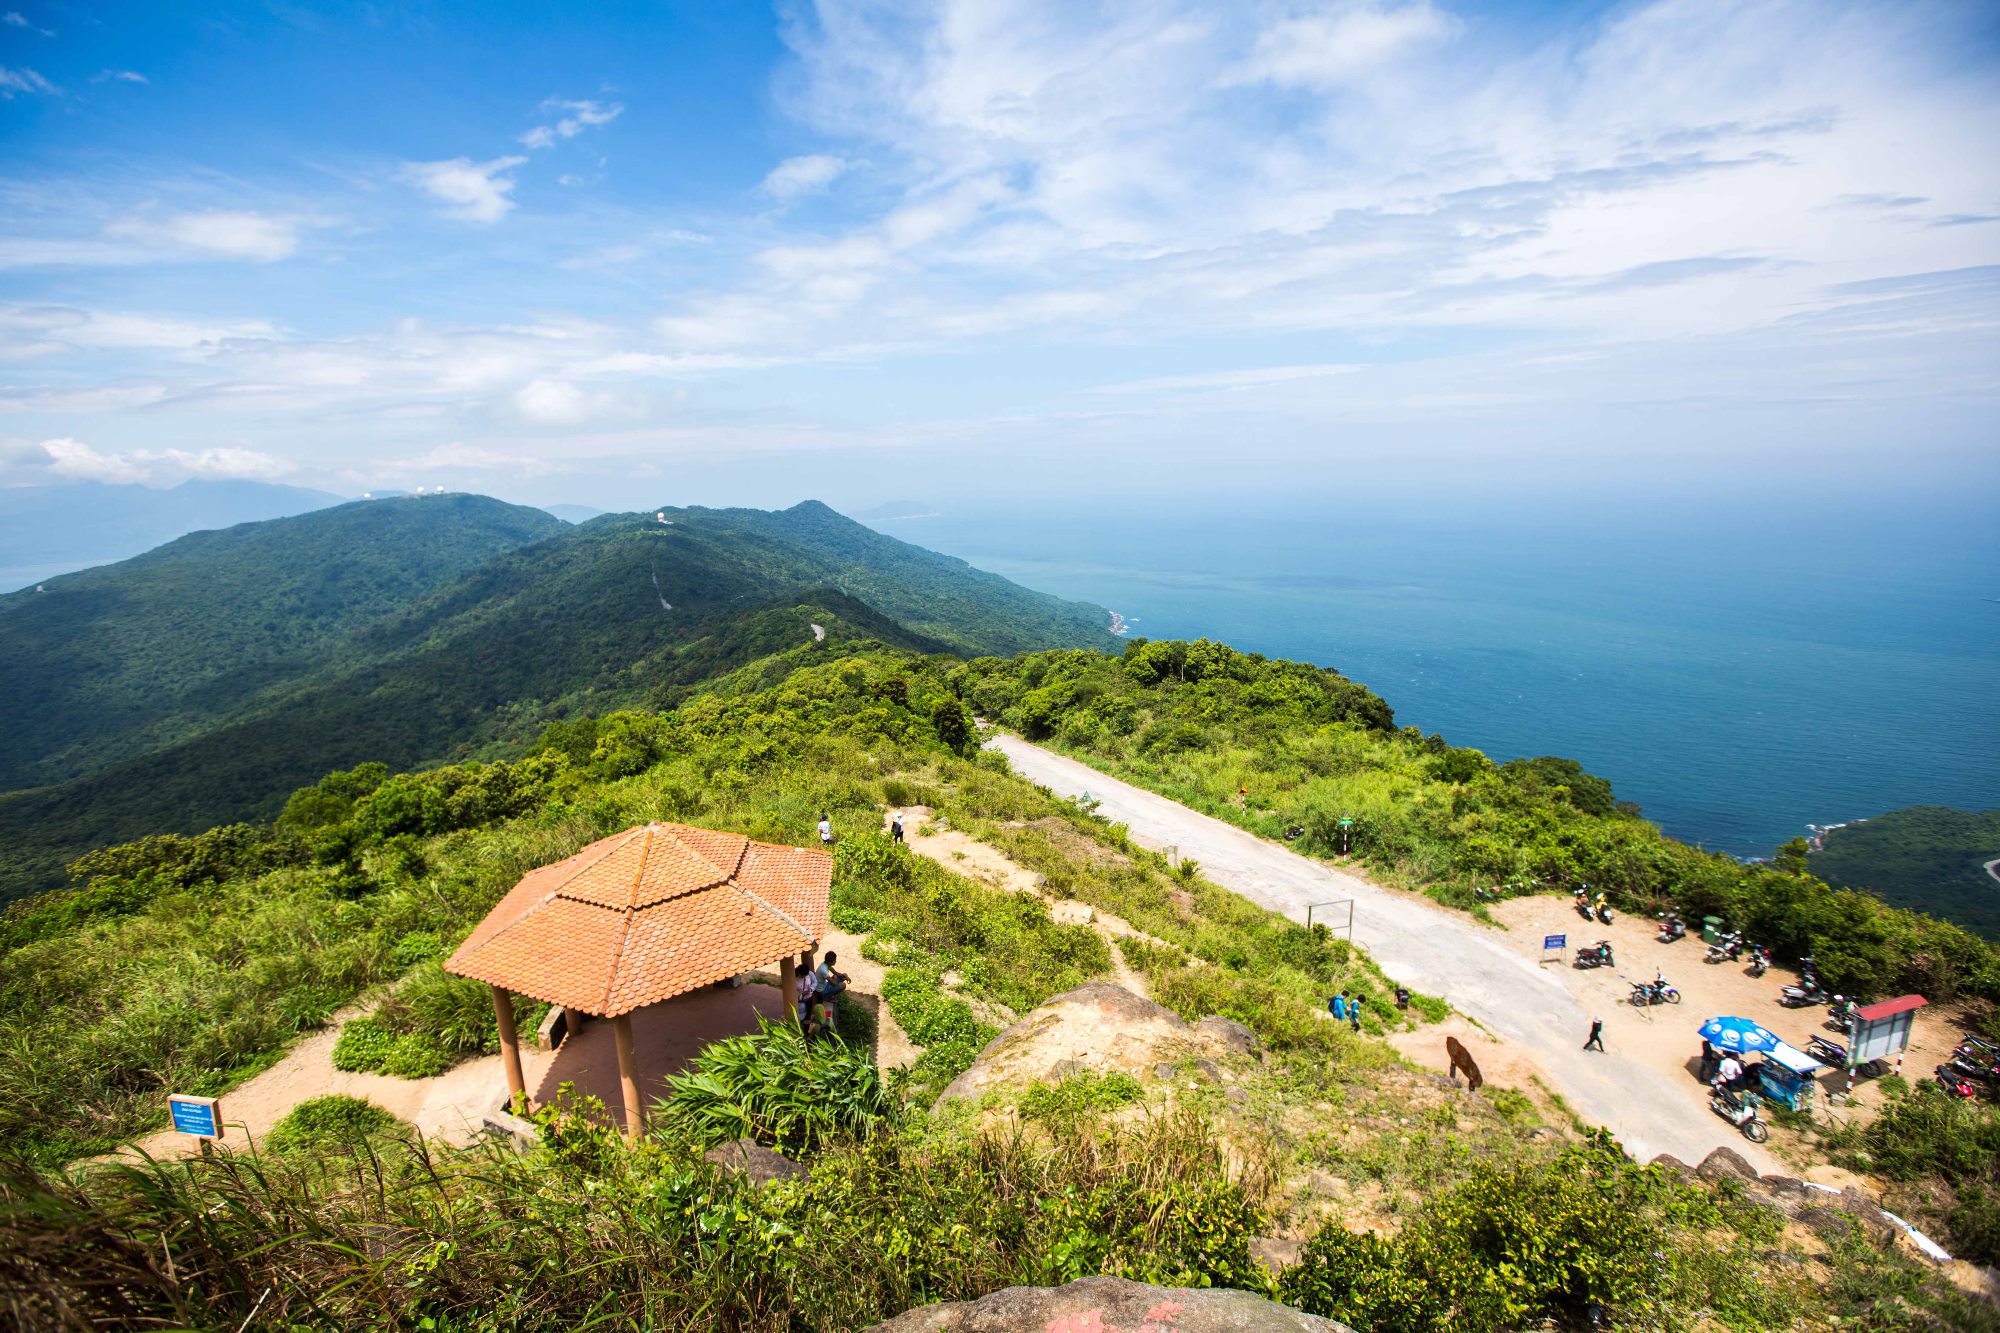 Trời và biển giao hòa tuyệt đẹp nhìn từ đỉnh núi Bàn Cờ, Đà Nẵng. (Nguồn ảnh: TTXVN)